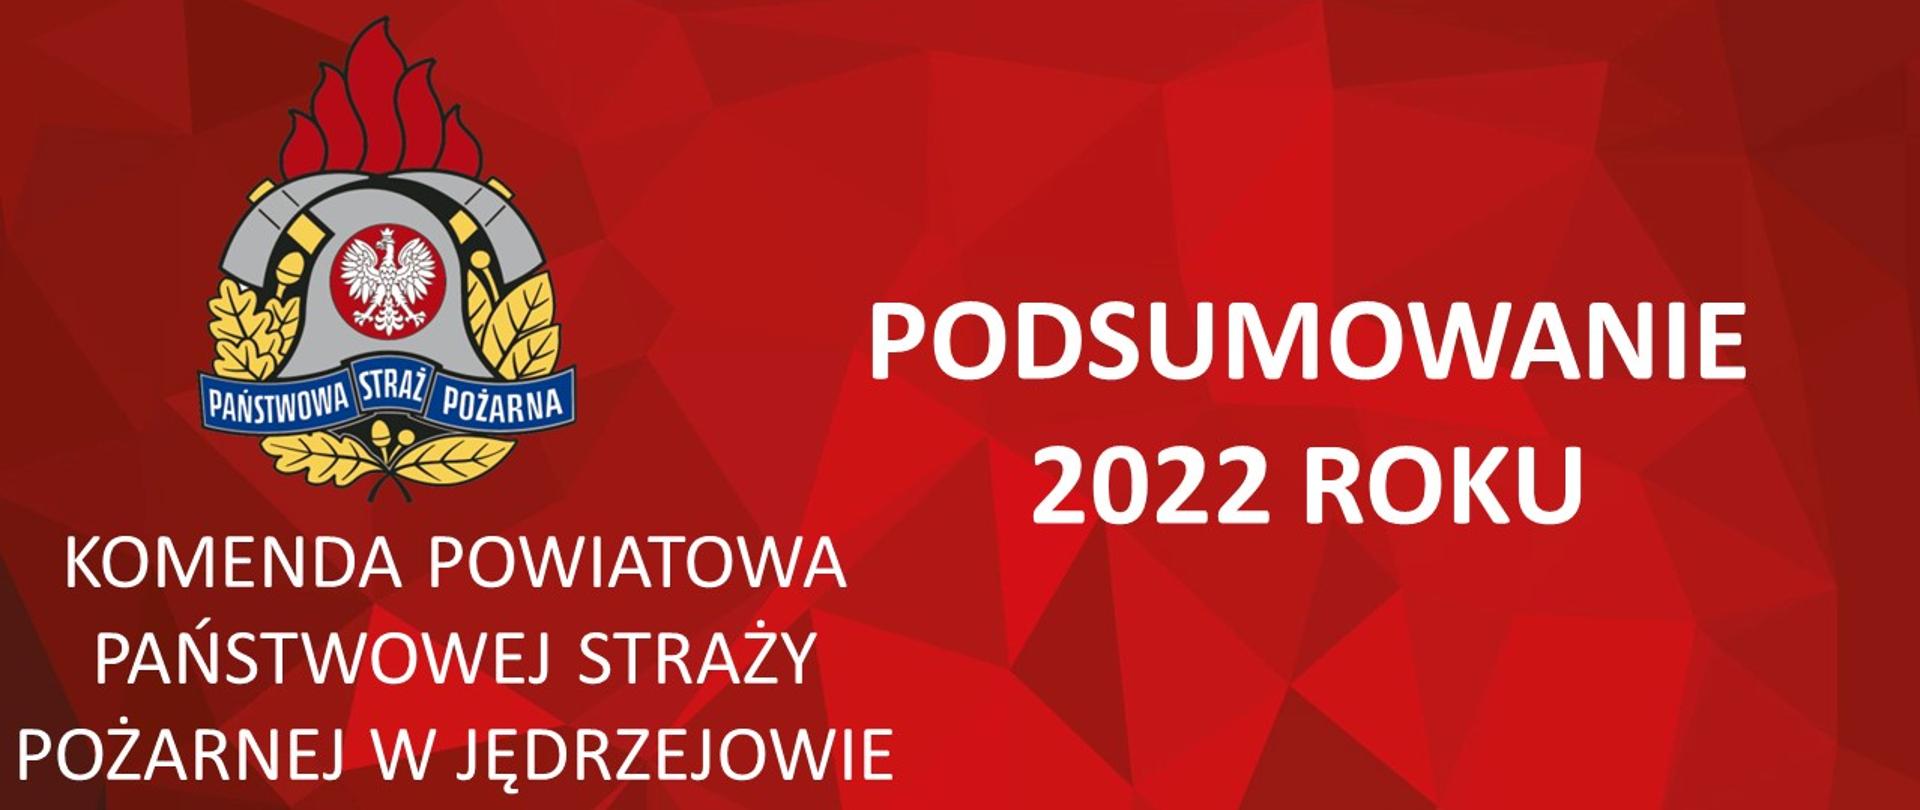 Na czerwonym tle biały napis PODSUMOWANIE 2022 ROKU oraz KOMENDA POWIATOWA PSP W JĘDRZEJOWIE wraz z logotypem PSP